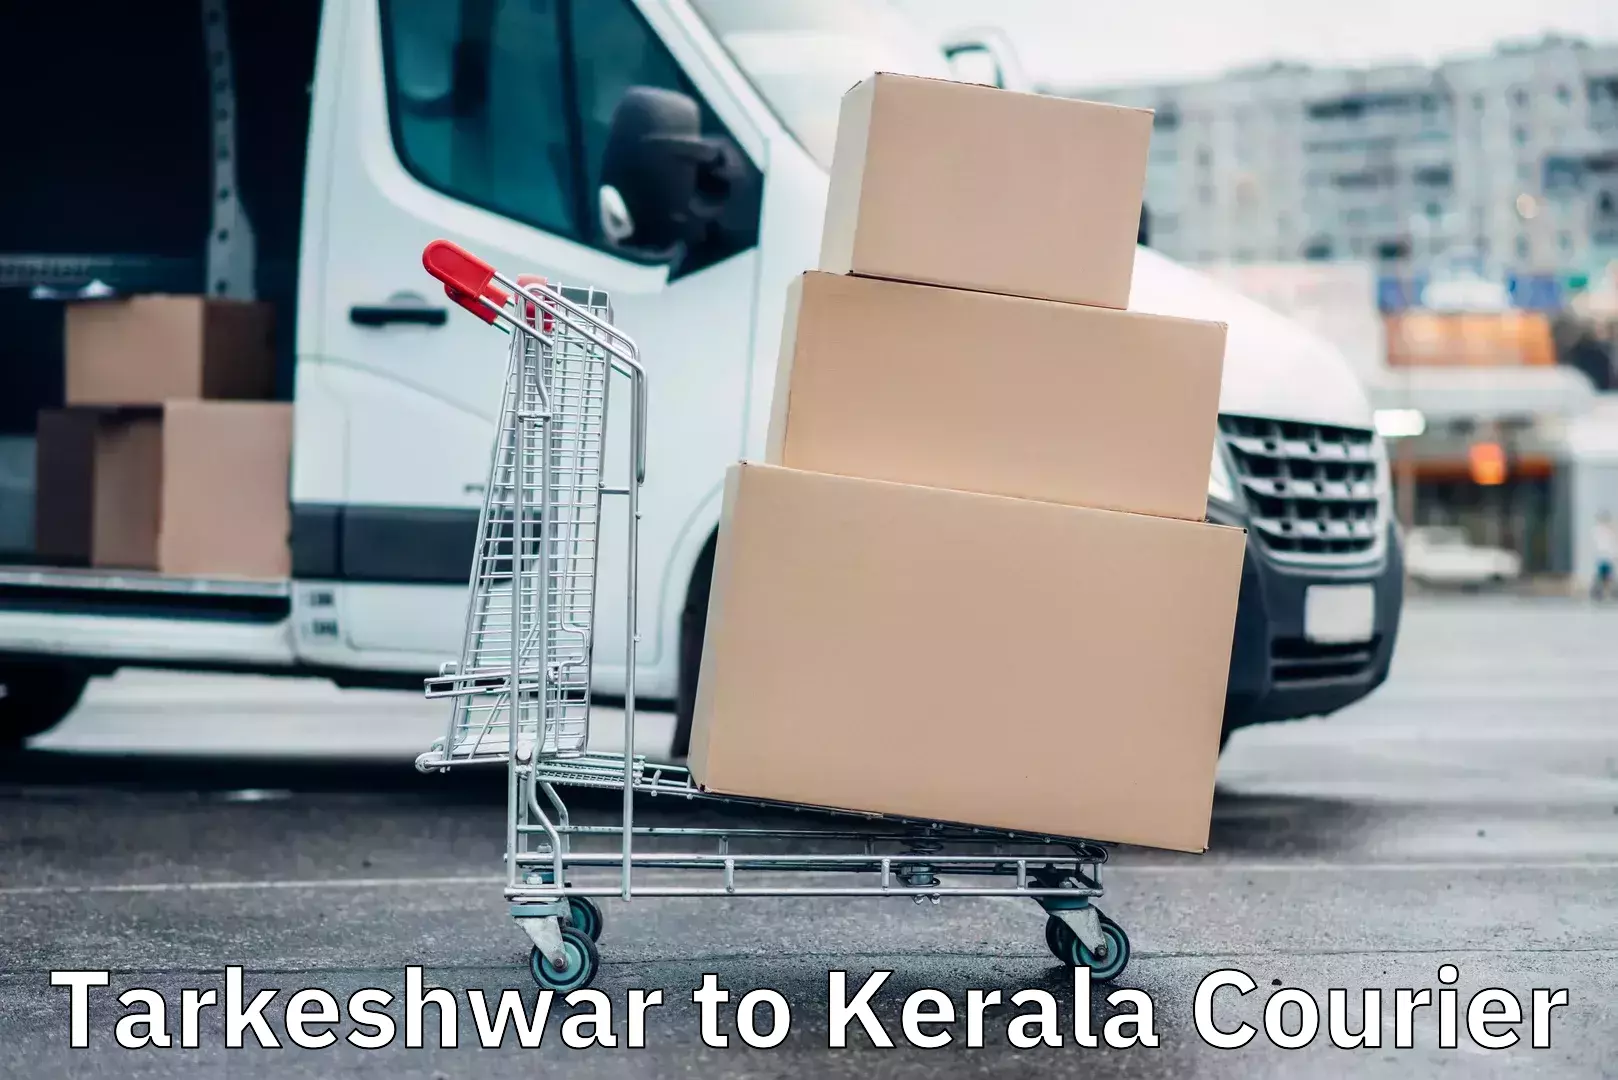 Door-to-door shipment Tarkeshwar to Kerala